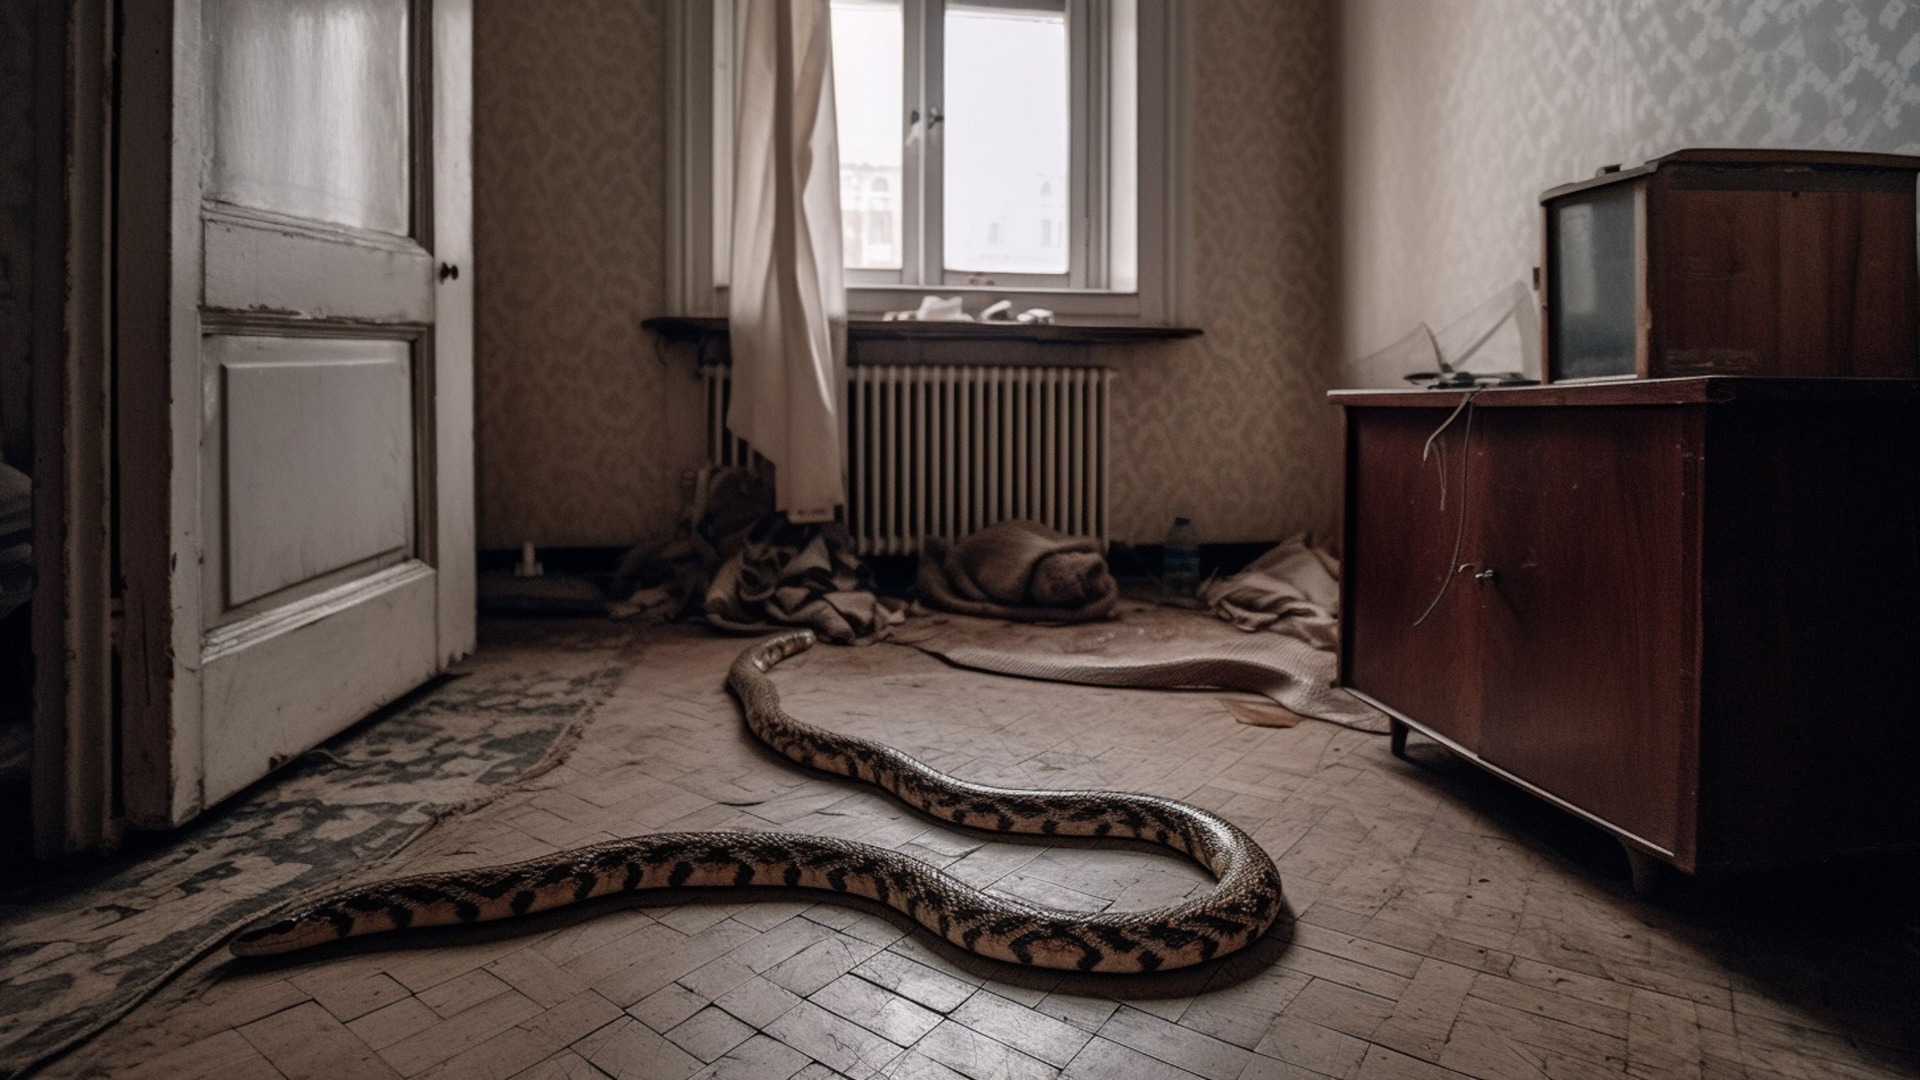 Змея заползла в дом к жителям Приморья